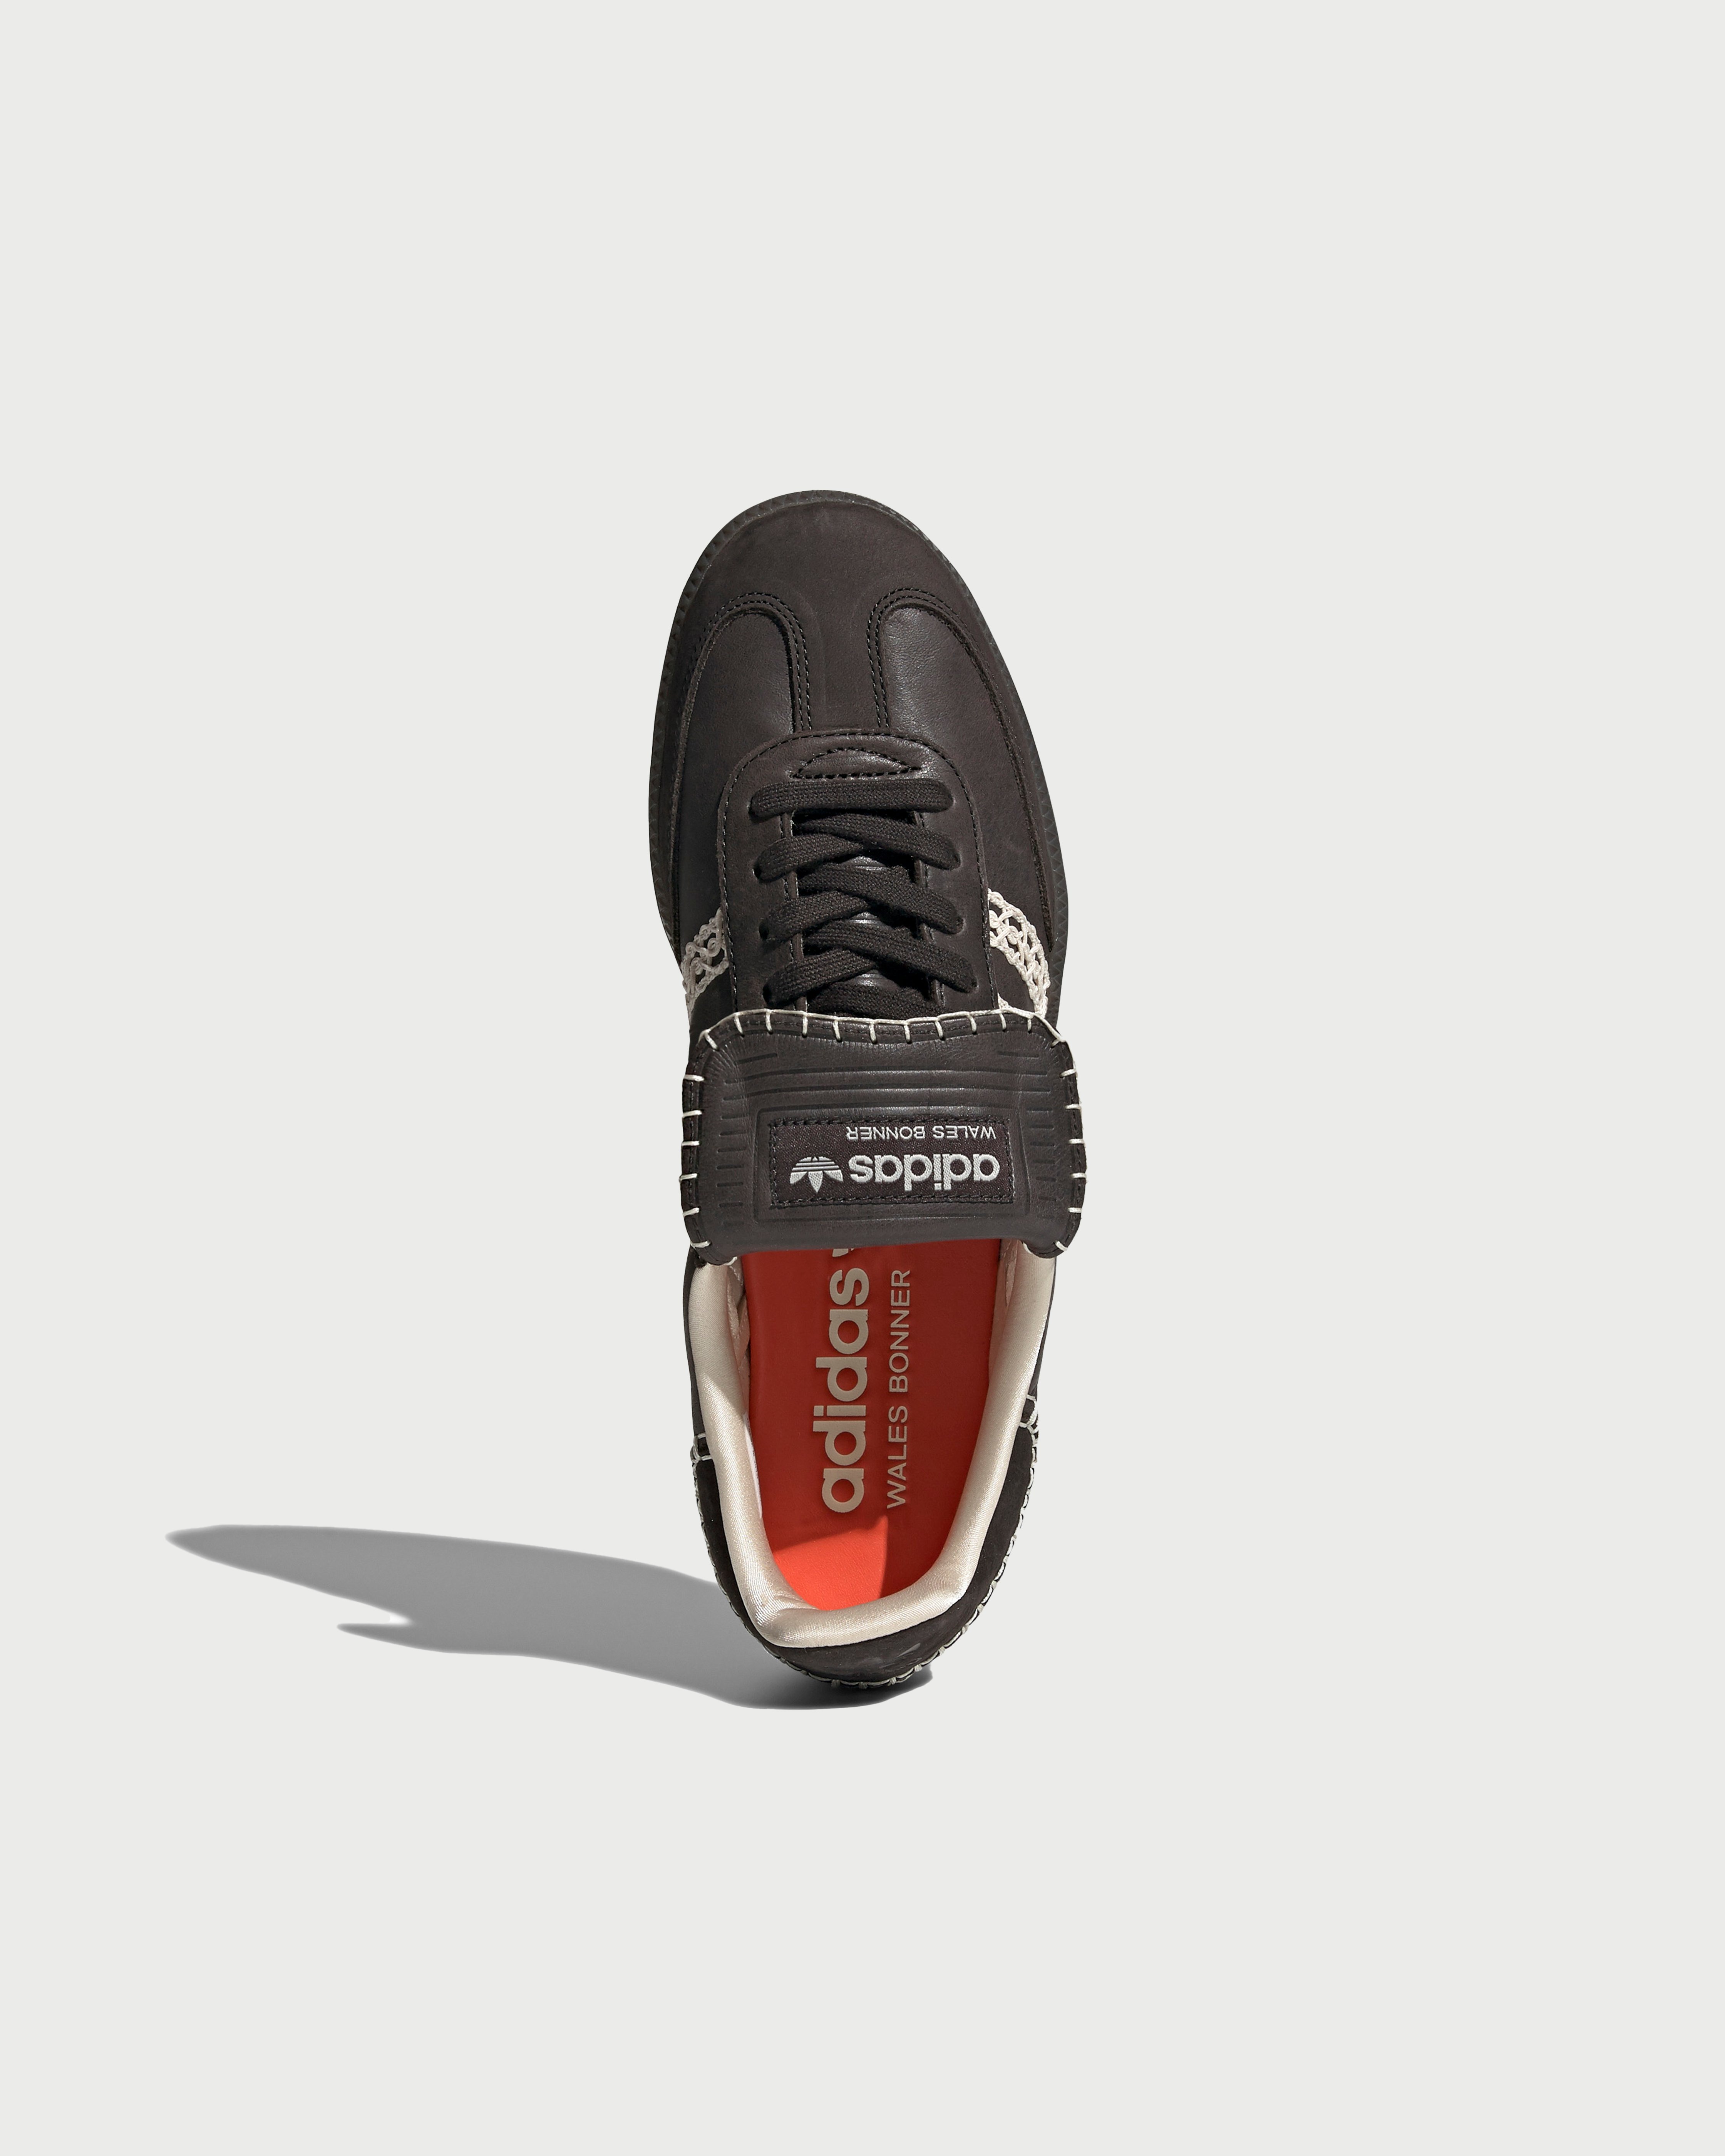 Adidas x Wales Bonner - Samba Black - Footwear - Black - Image 4